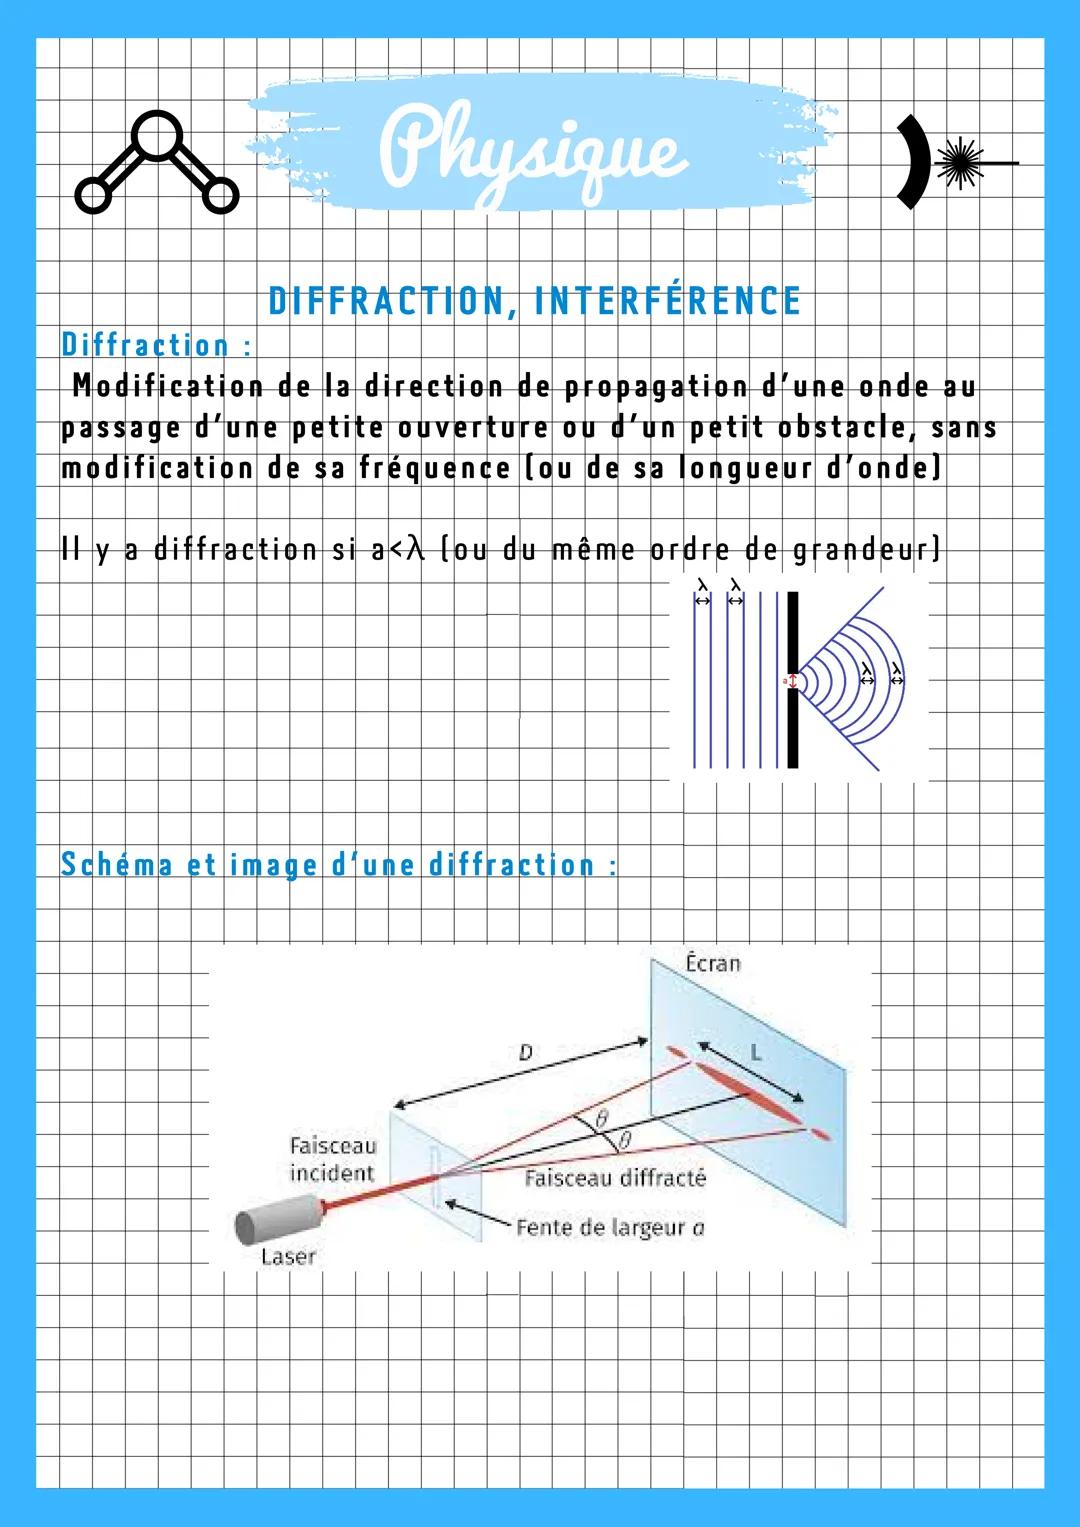 & Physique
DIFFRACTION, INTERFERENCE
Diffraction:
Modification de la direction de propagation d'une onde au
passage d'une petite ouverture o